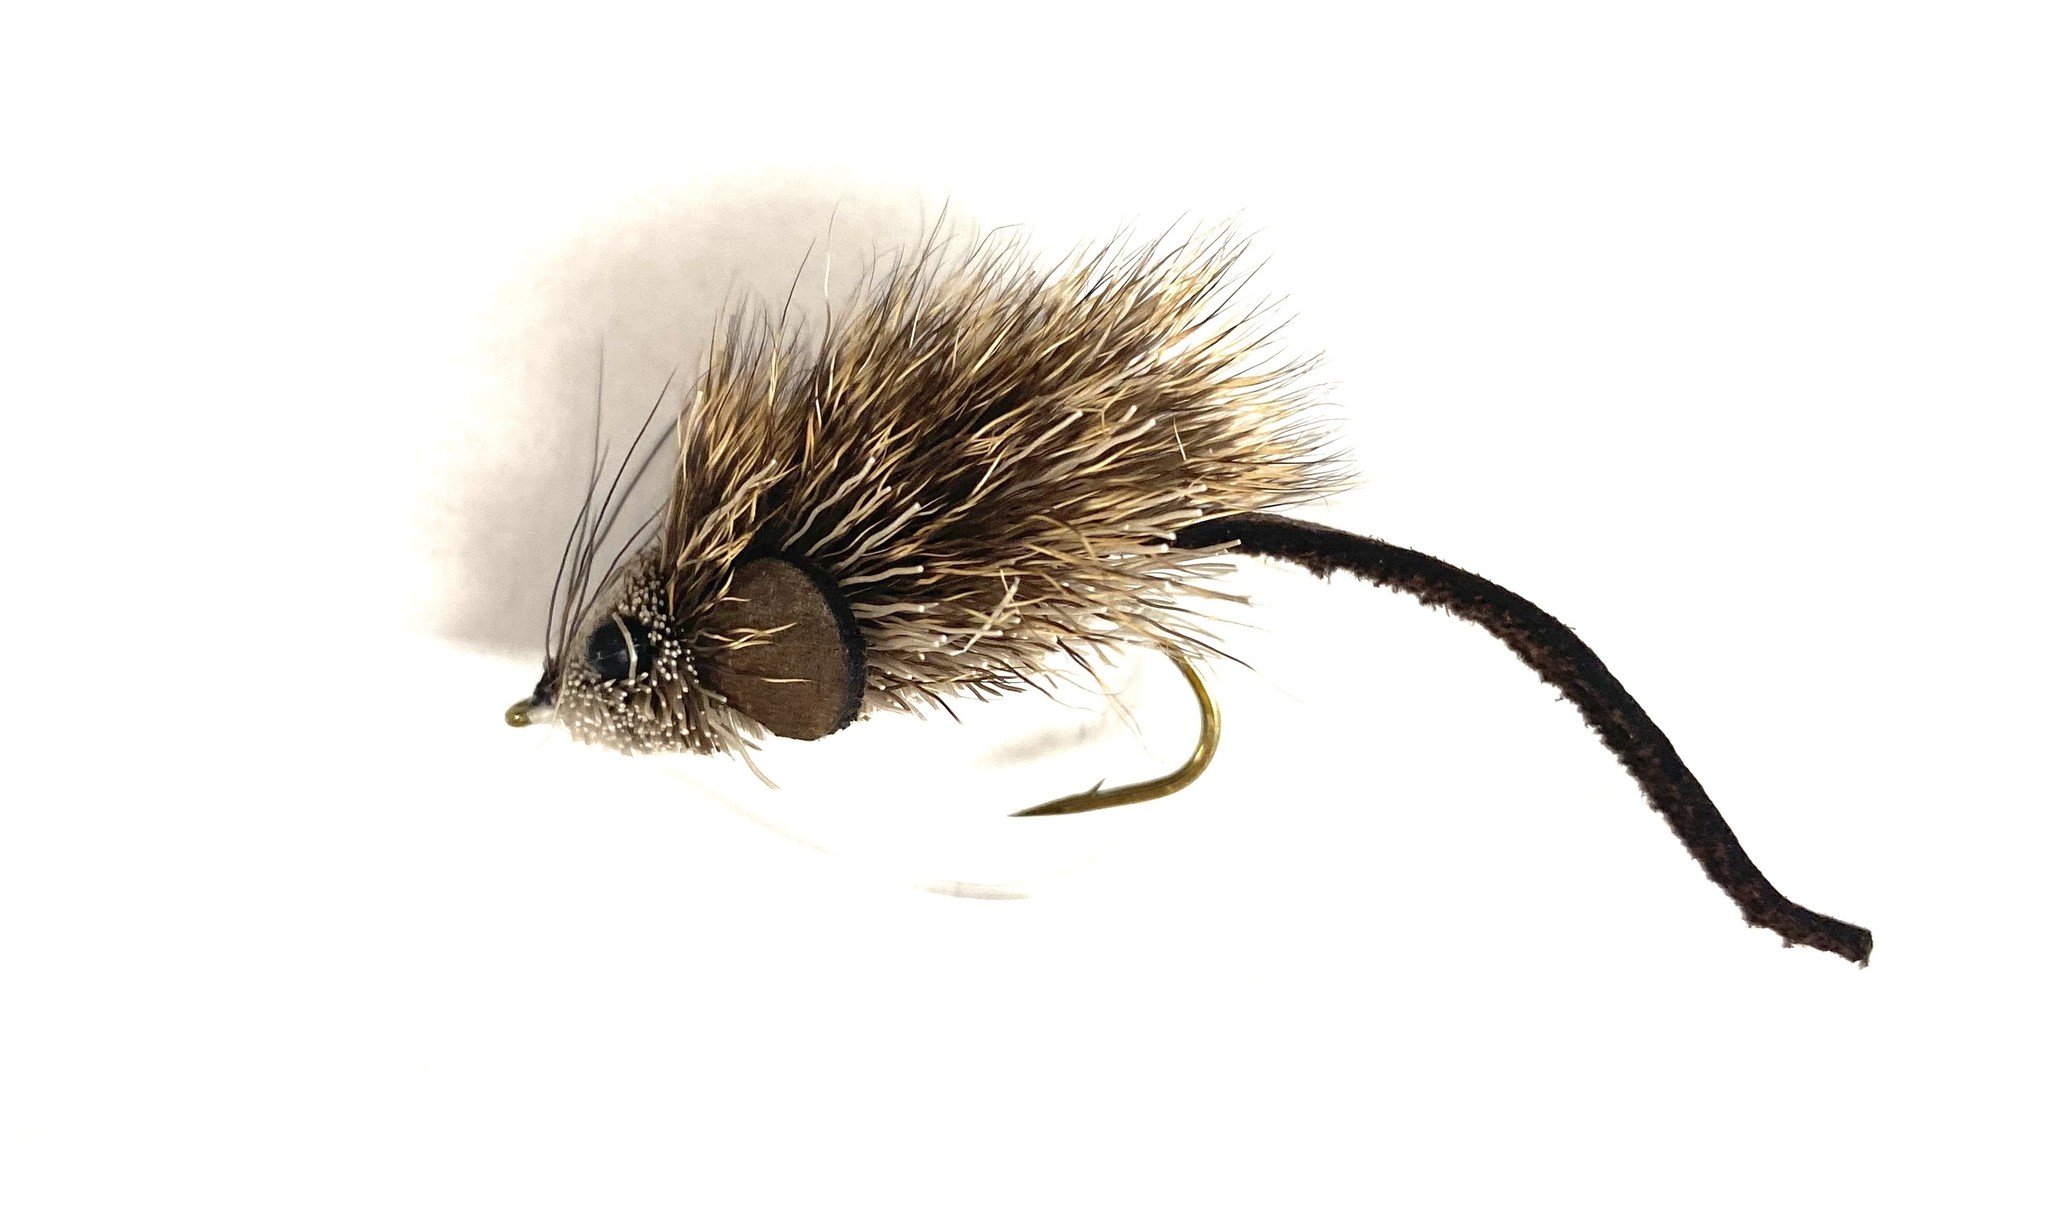 Umpqua Feather Merchants Deer Hair Mouse